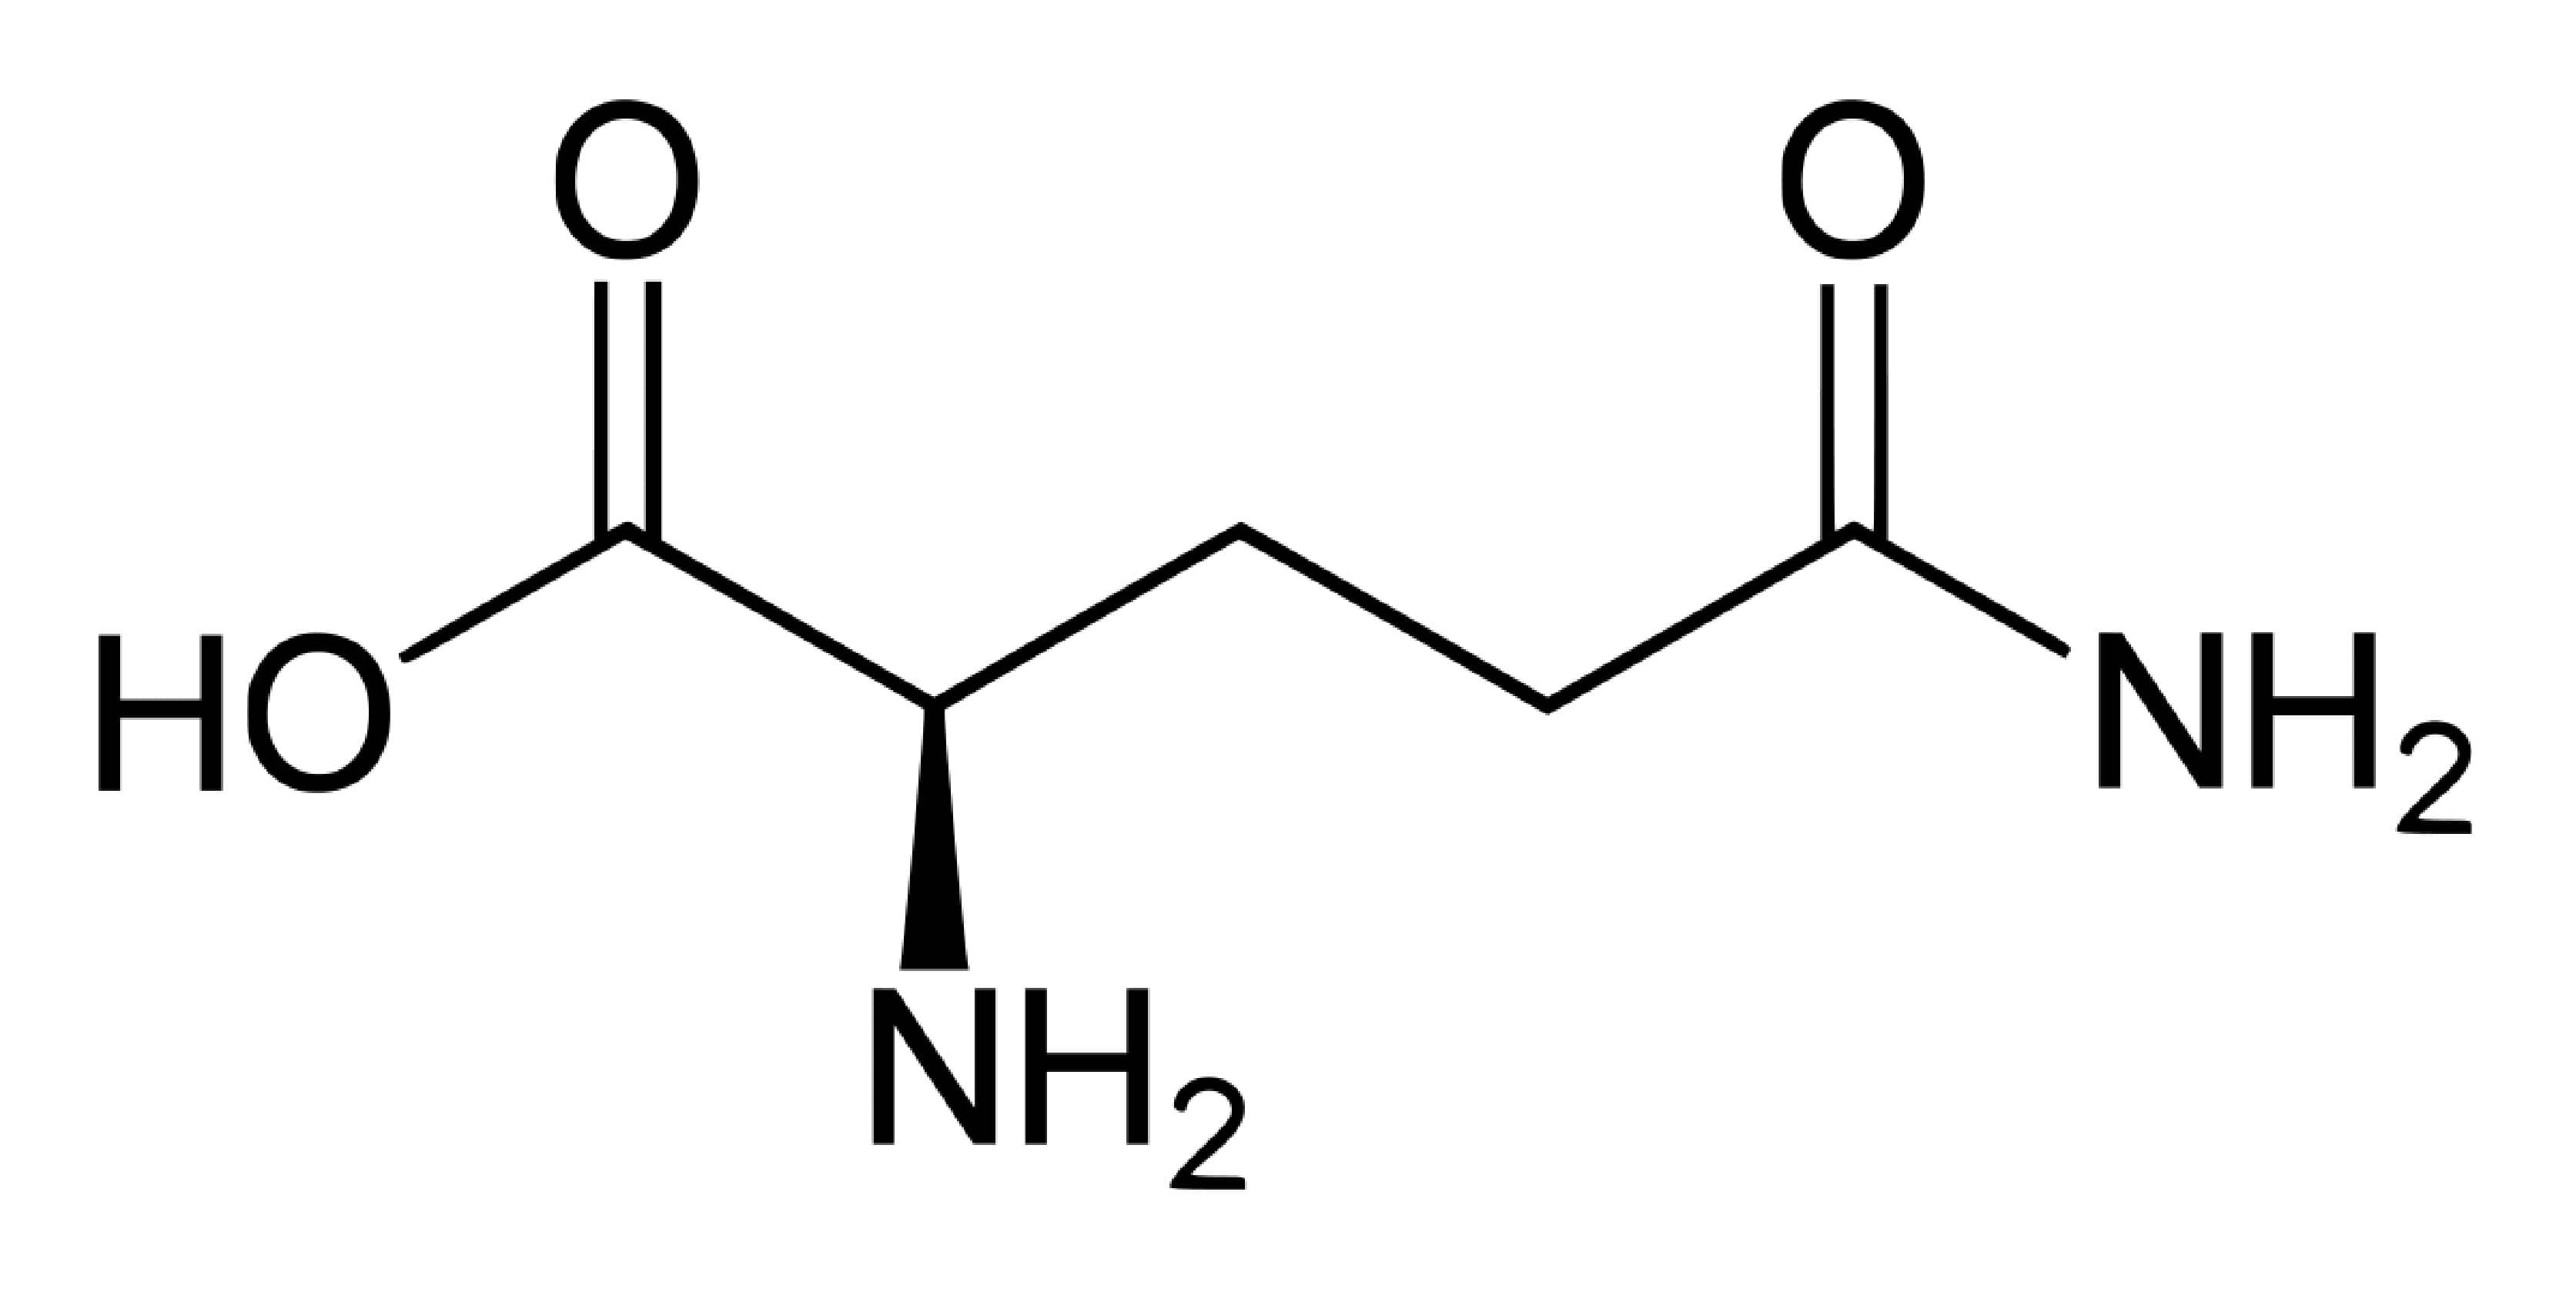 解密麩醯胺酸 我們該額外補充體內麩醯胺酸嗎？